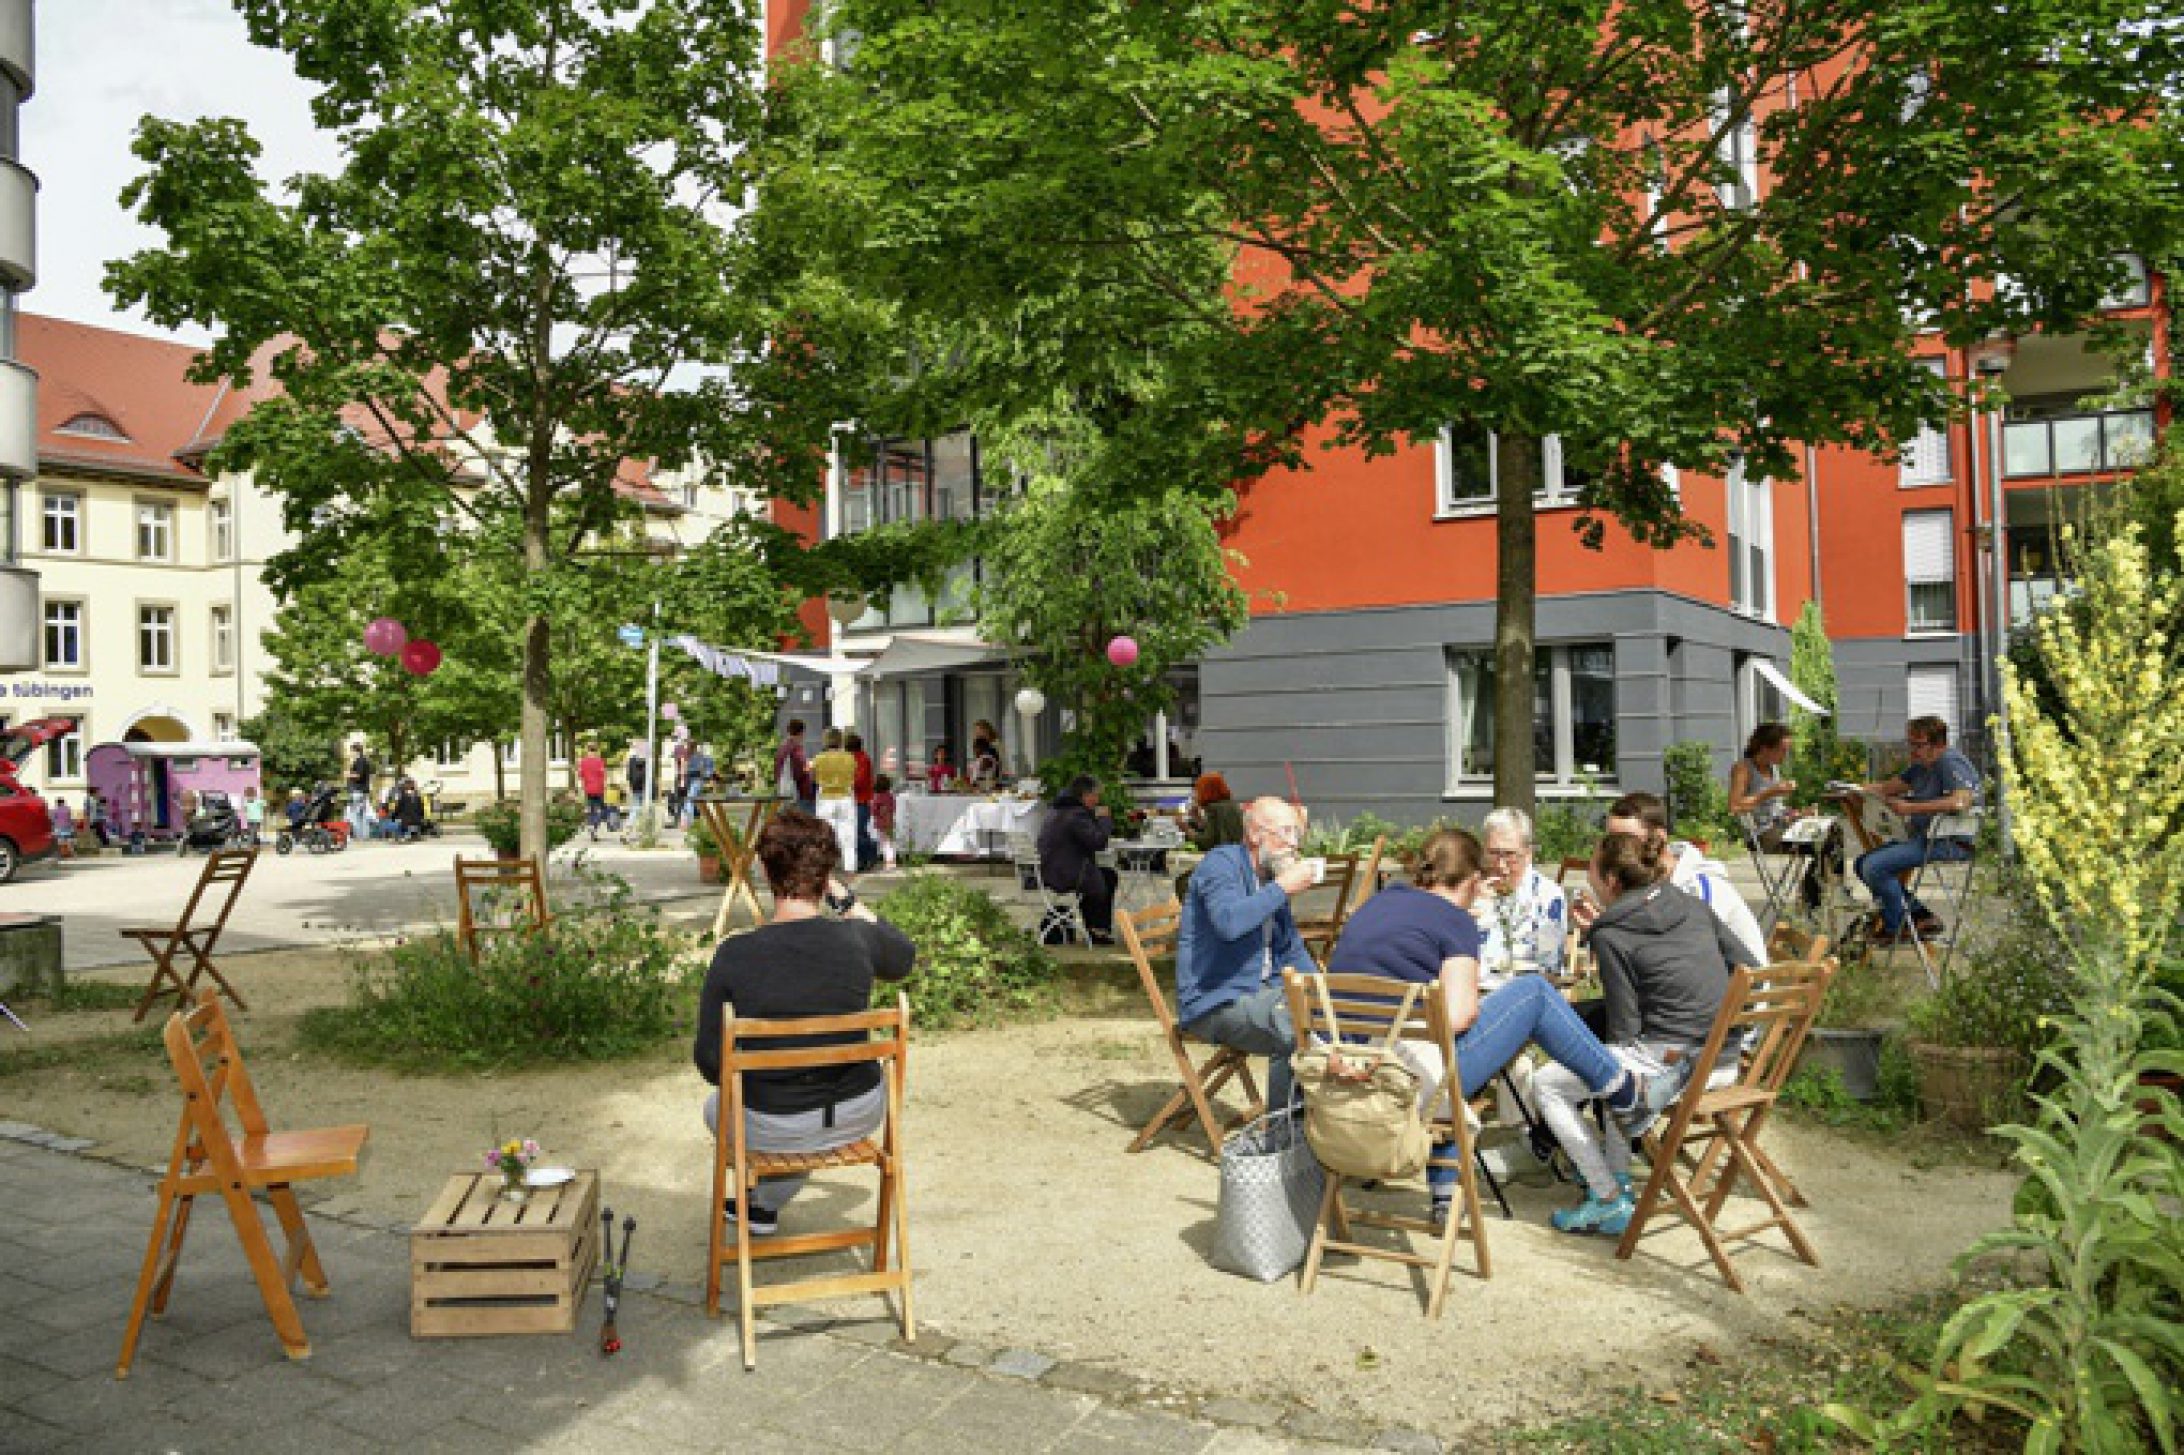 Bewohner des Stadtteils sitzen bei gutem Wetter gemeinsam im Hof unter Bäumen und führen Gespräche